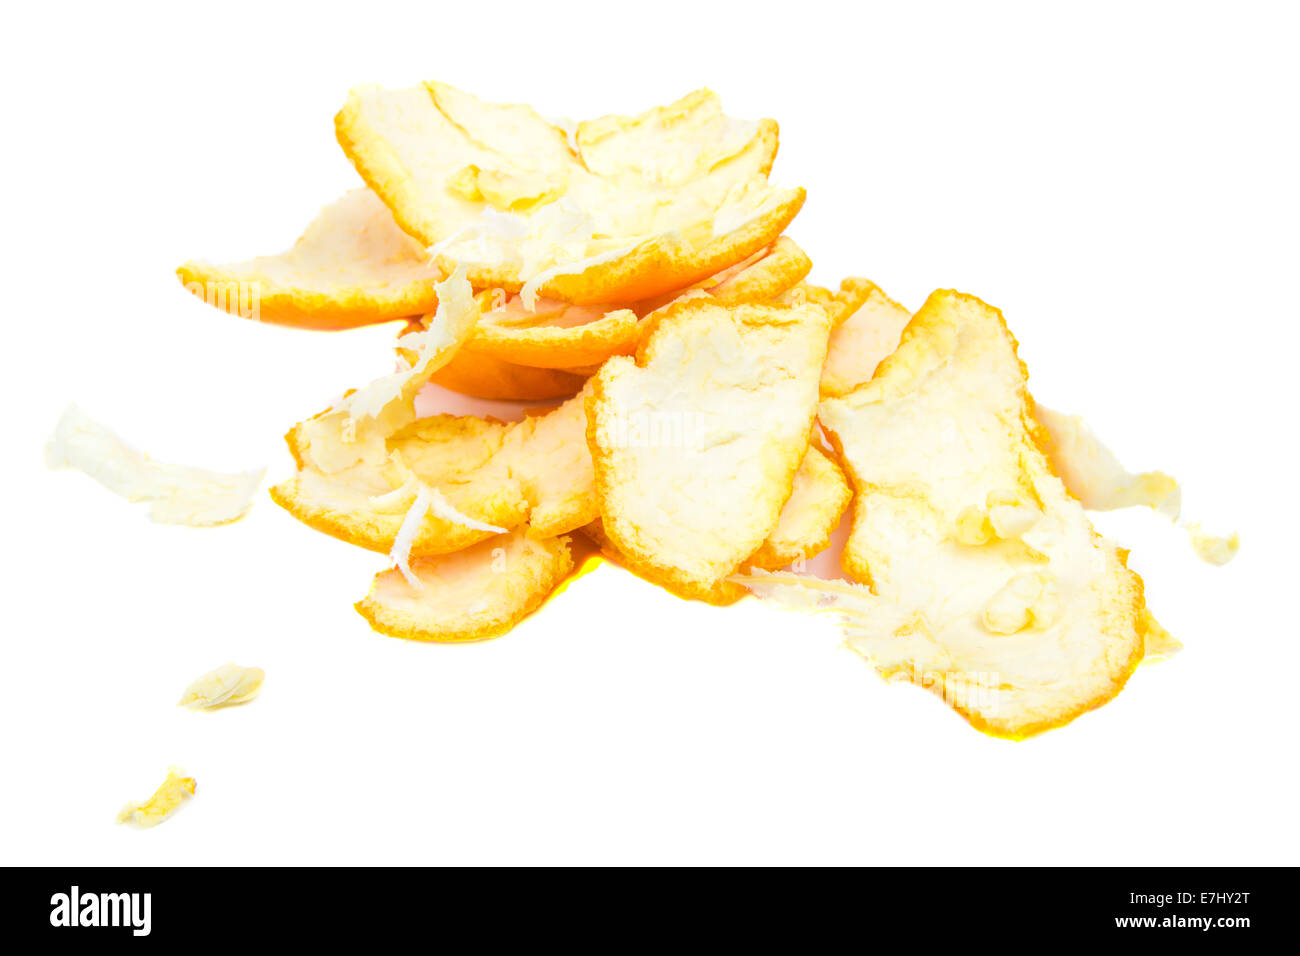 Orange peel isolated on the white background. Stock Photo